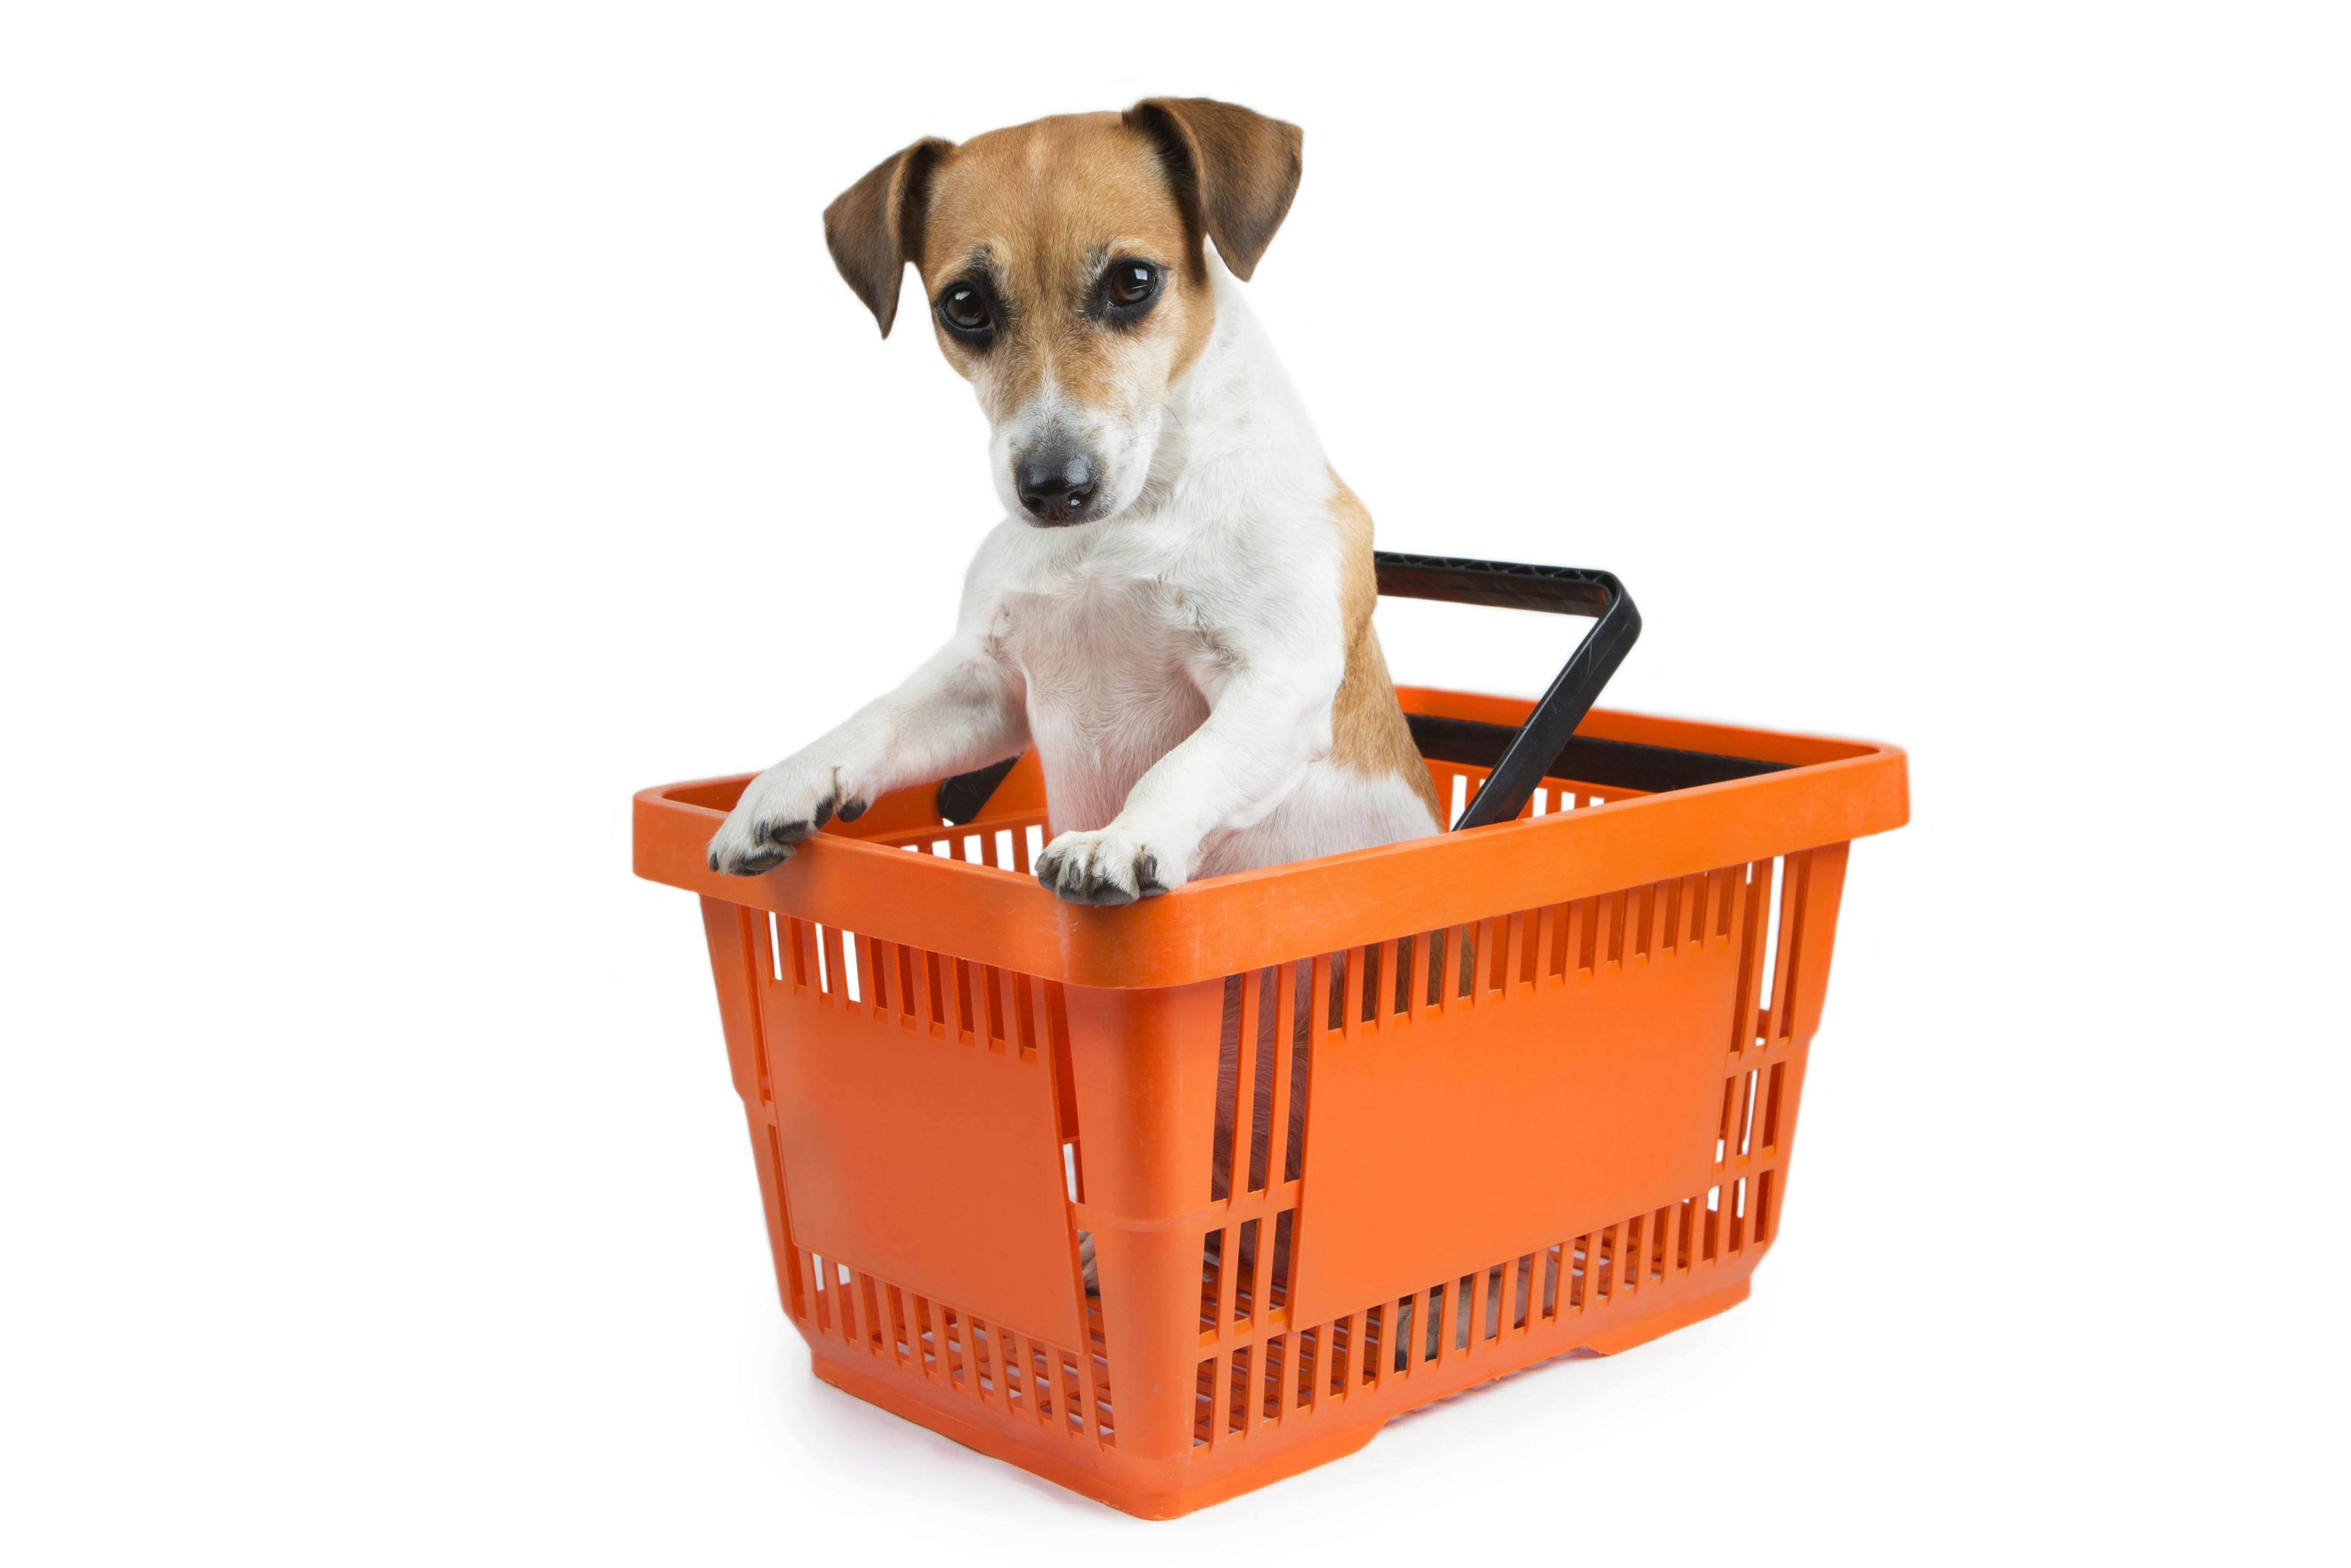 Dog in shopping cart